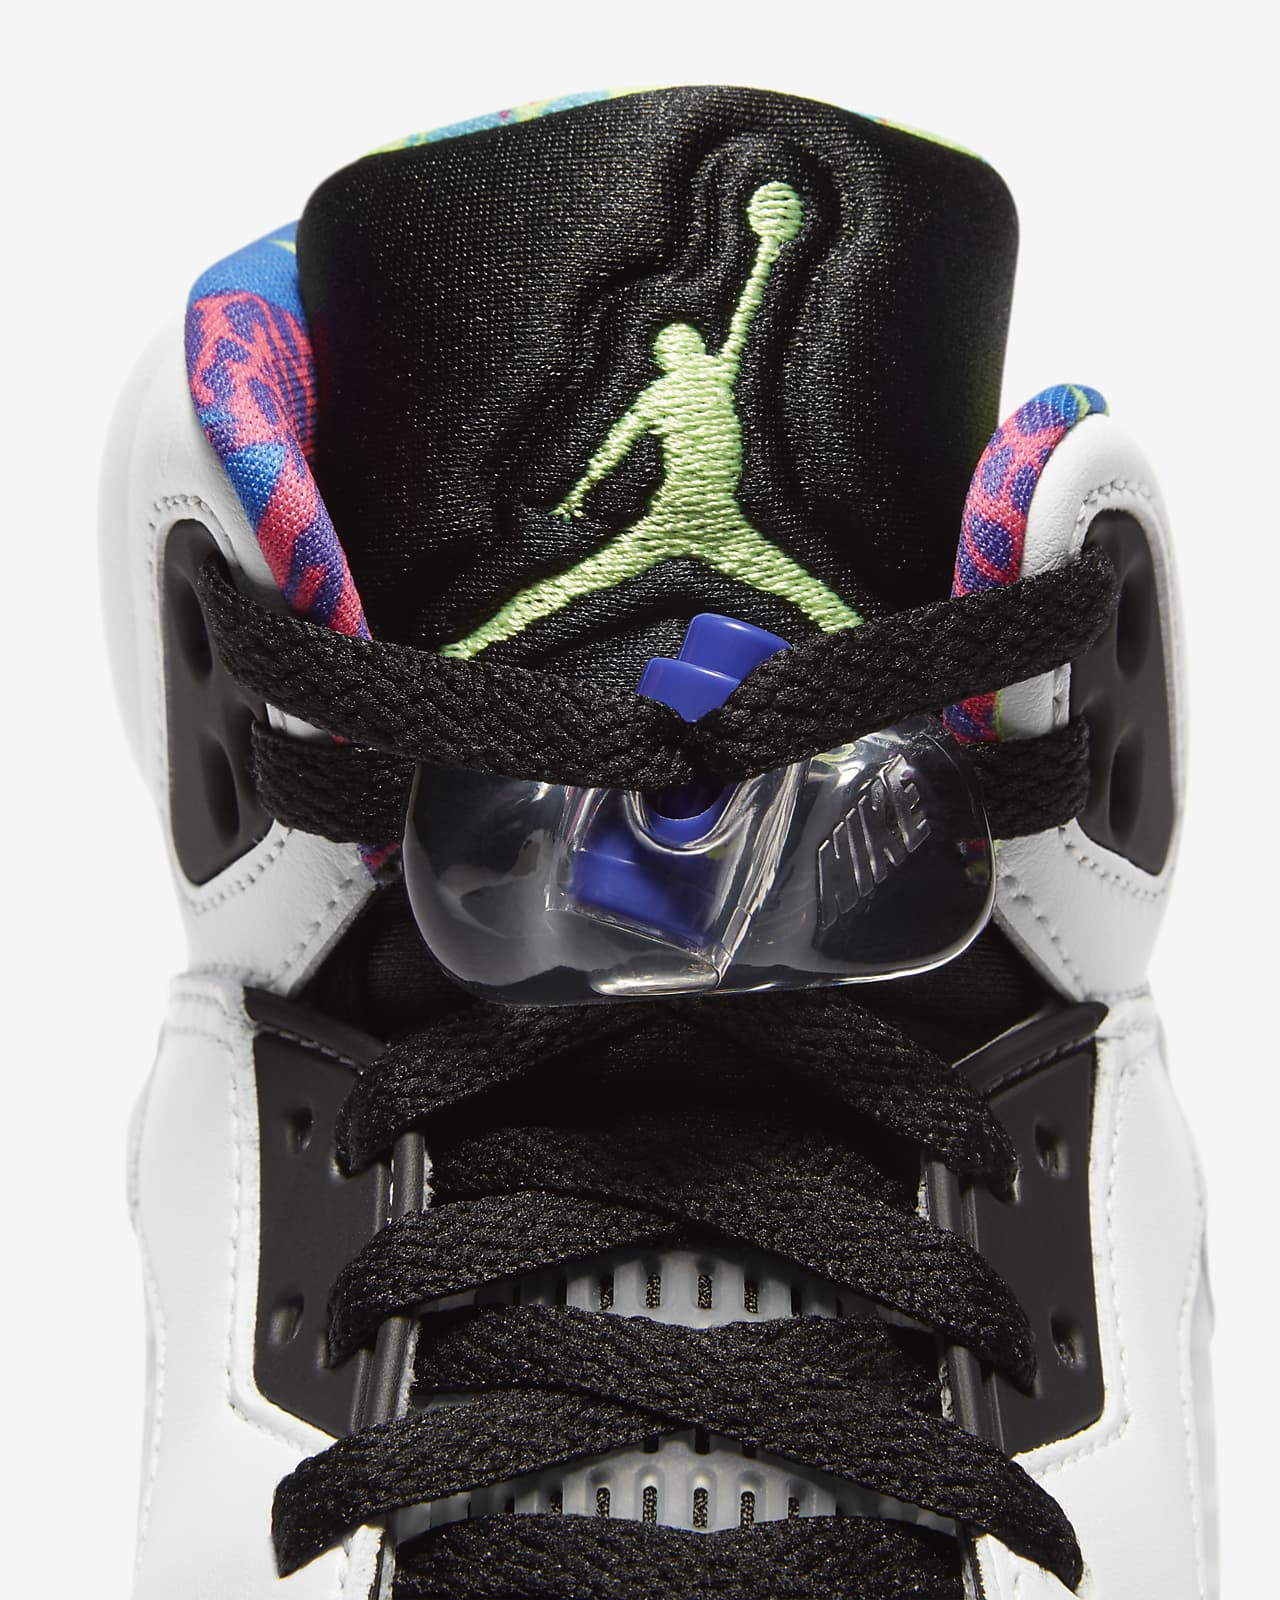 Air Jordan 5 Retro Men's Shoe. Nike IN